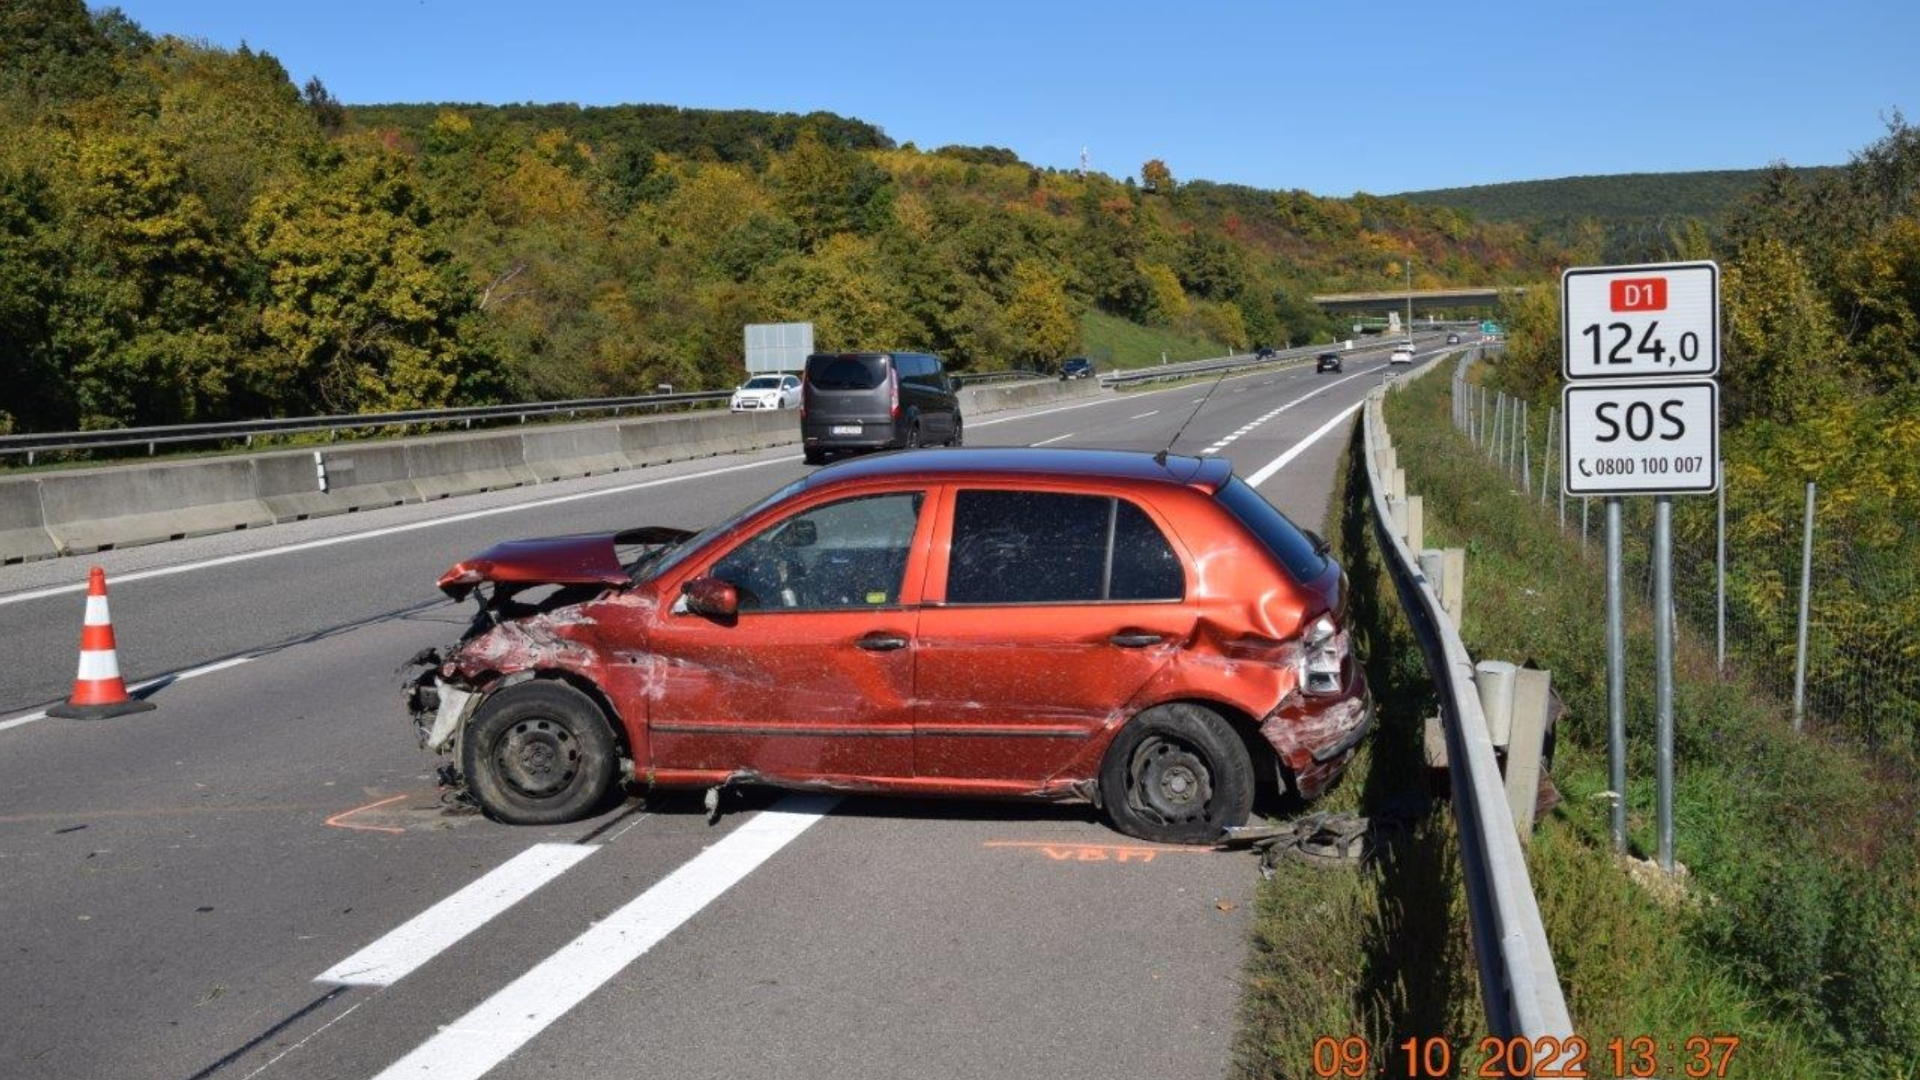 Dopravná nehoda na diaľnici D1, pri ktorej opäť asistoval alkohol.